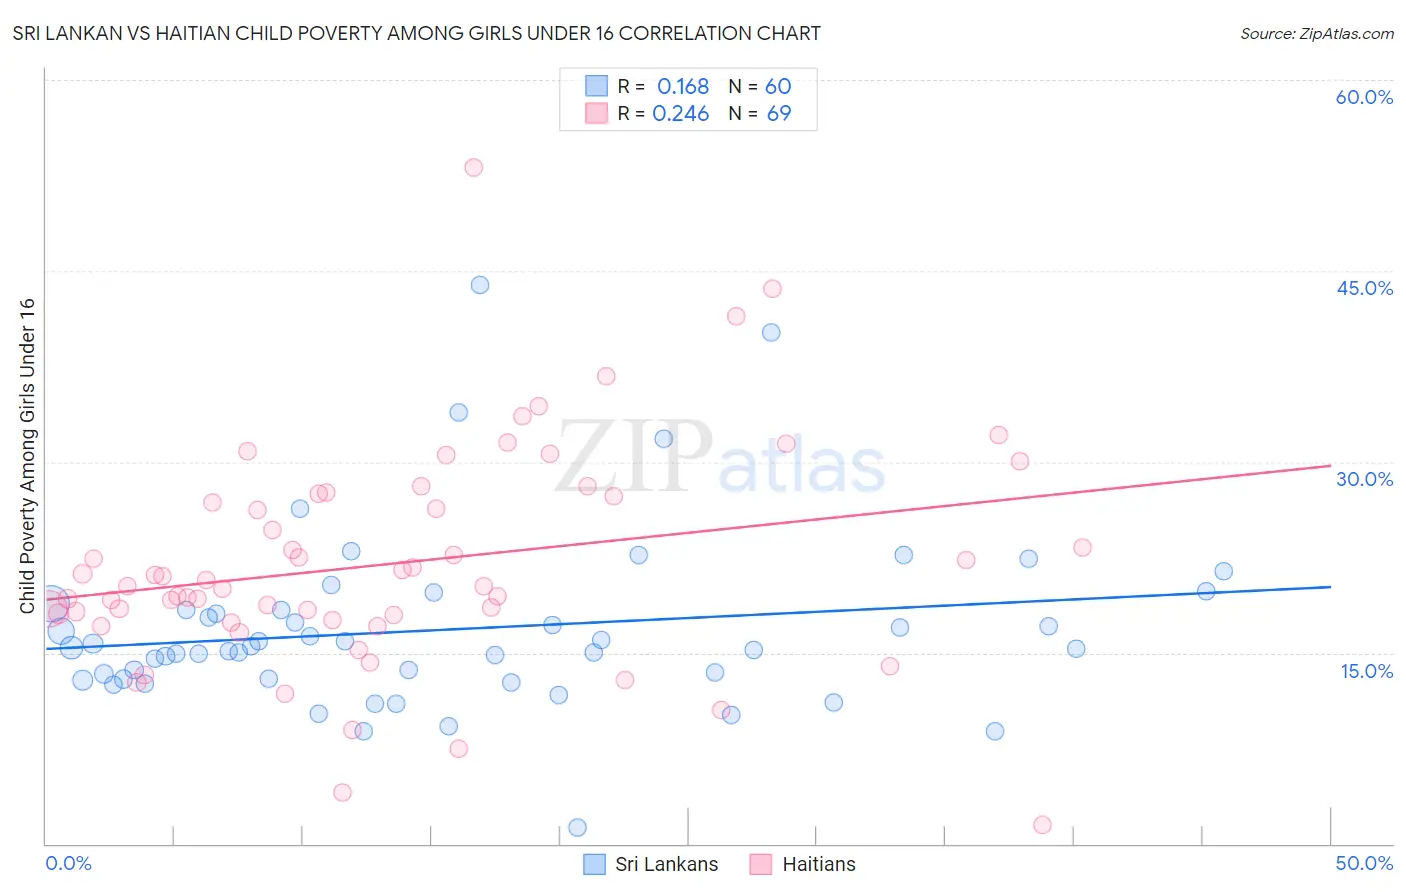 Sri Lankan vs Haitian Child Poverty Among Girls Under 16